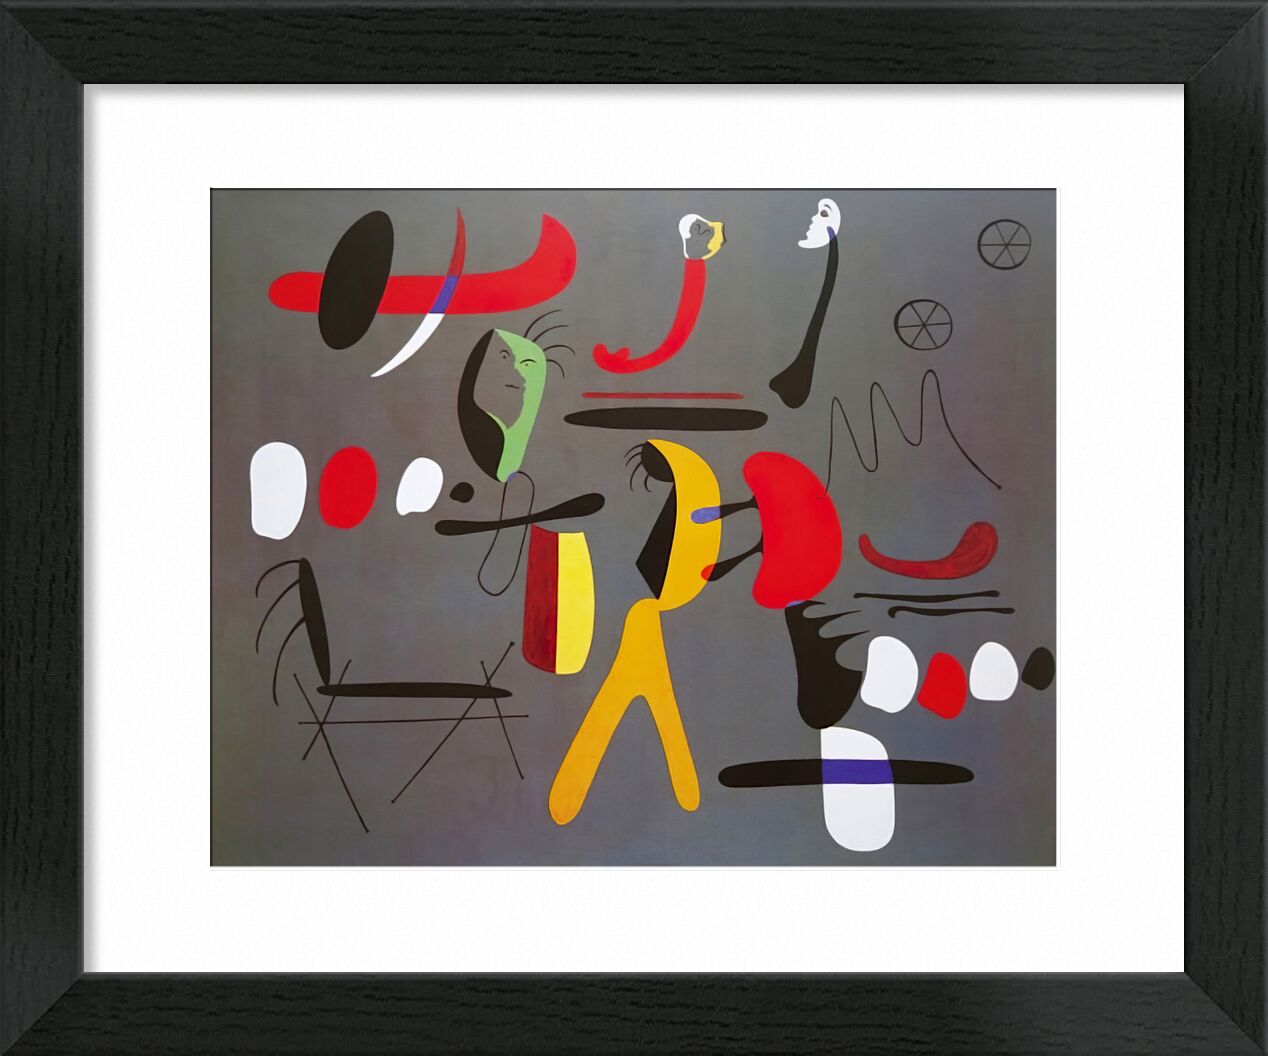 Collage Painting - Joan Miró von Bildende Kunst, Prodi Art, Joan Miró, Malerei, Collage, abstrakt, Zeichnung, Formen und Farben